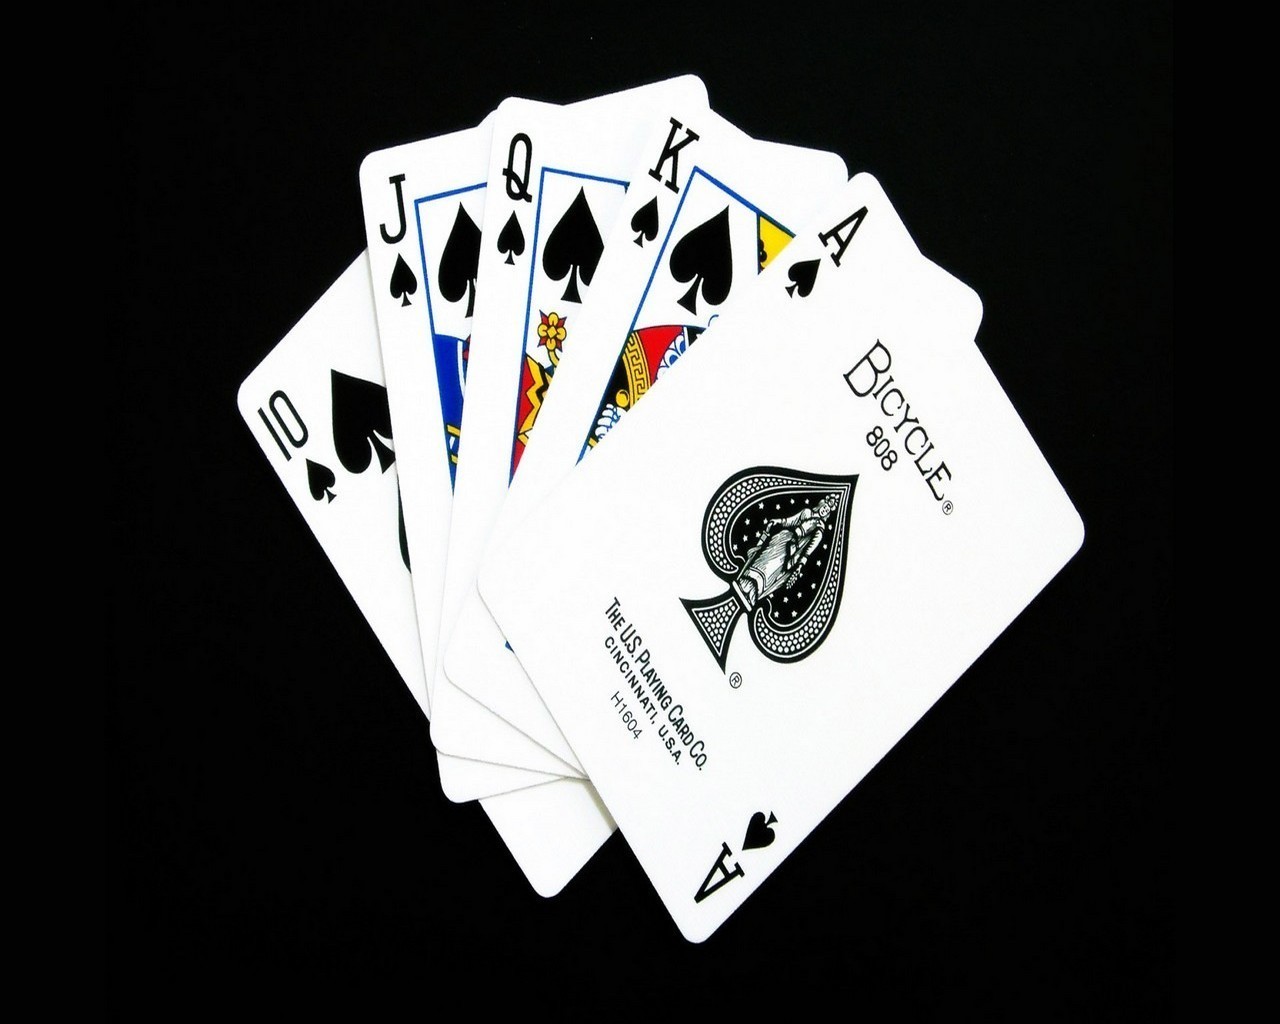 gambling poker casino ace luck chance blackjack risk flush gambler lucky imperial deck wealth spade win play winner success leisure